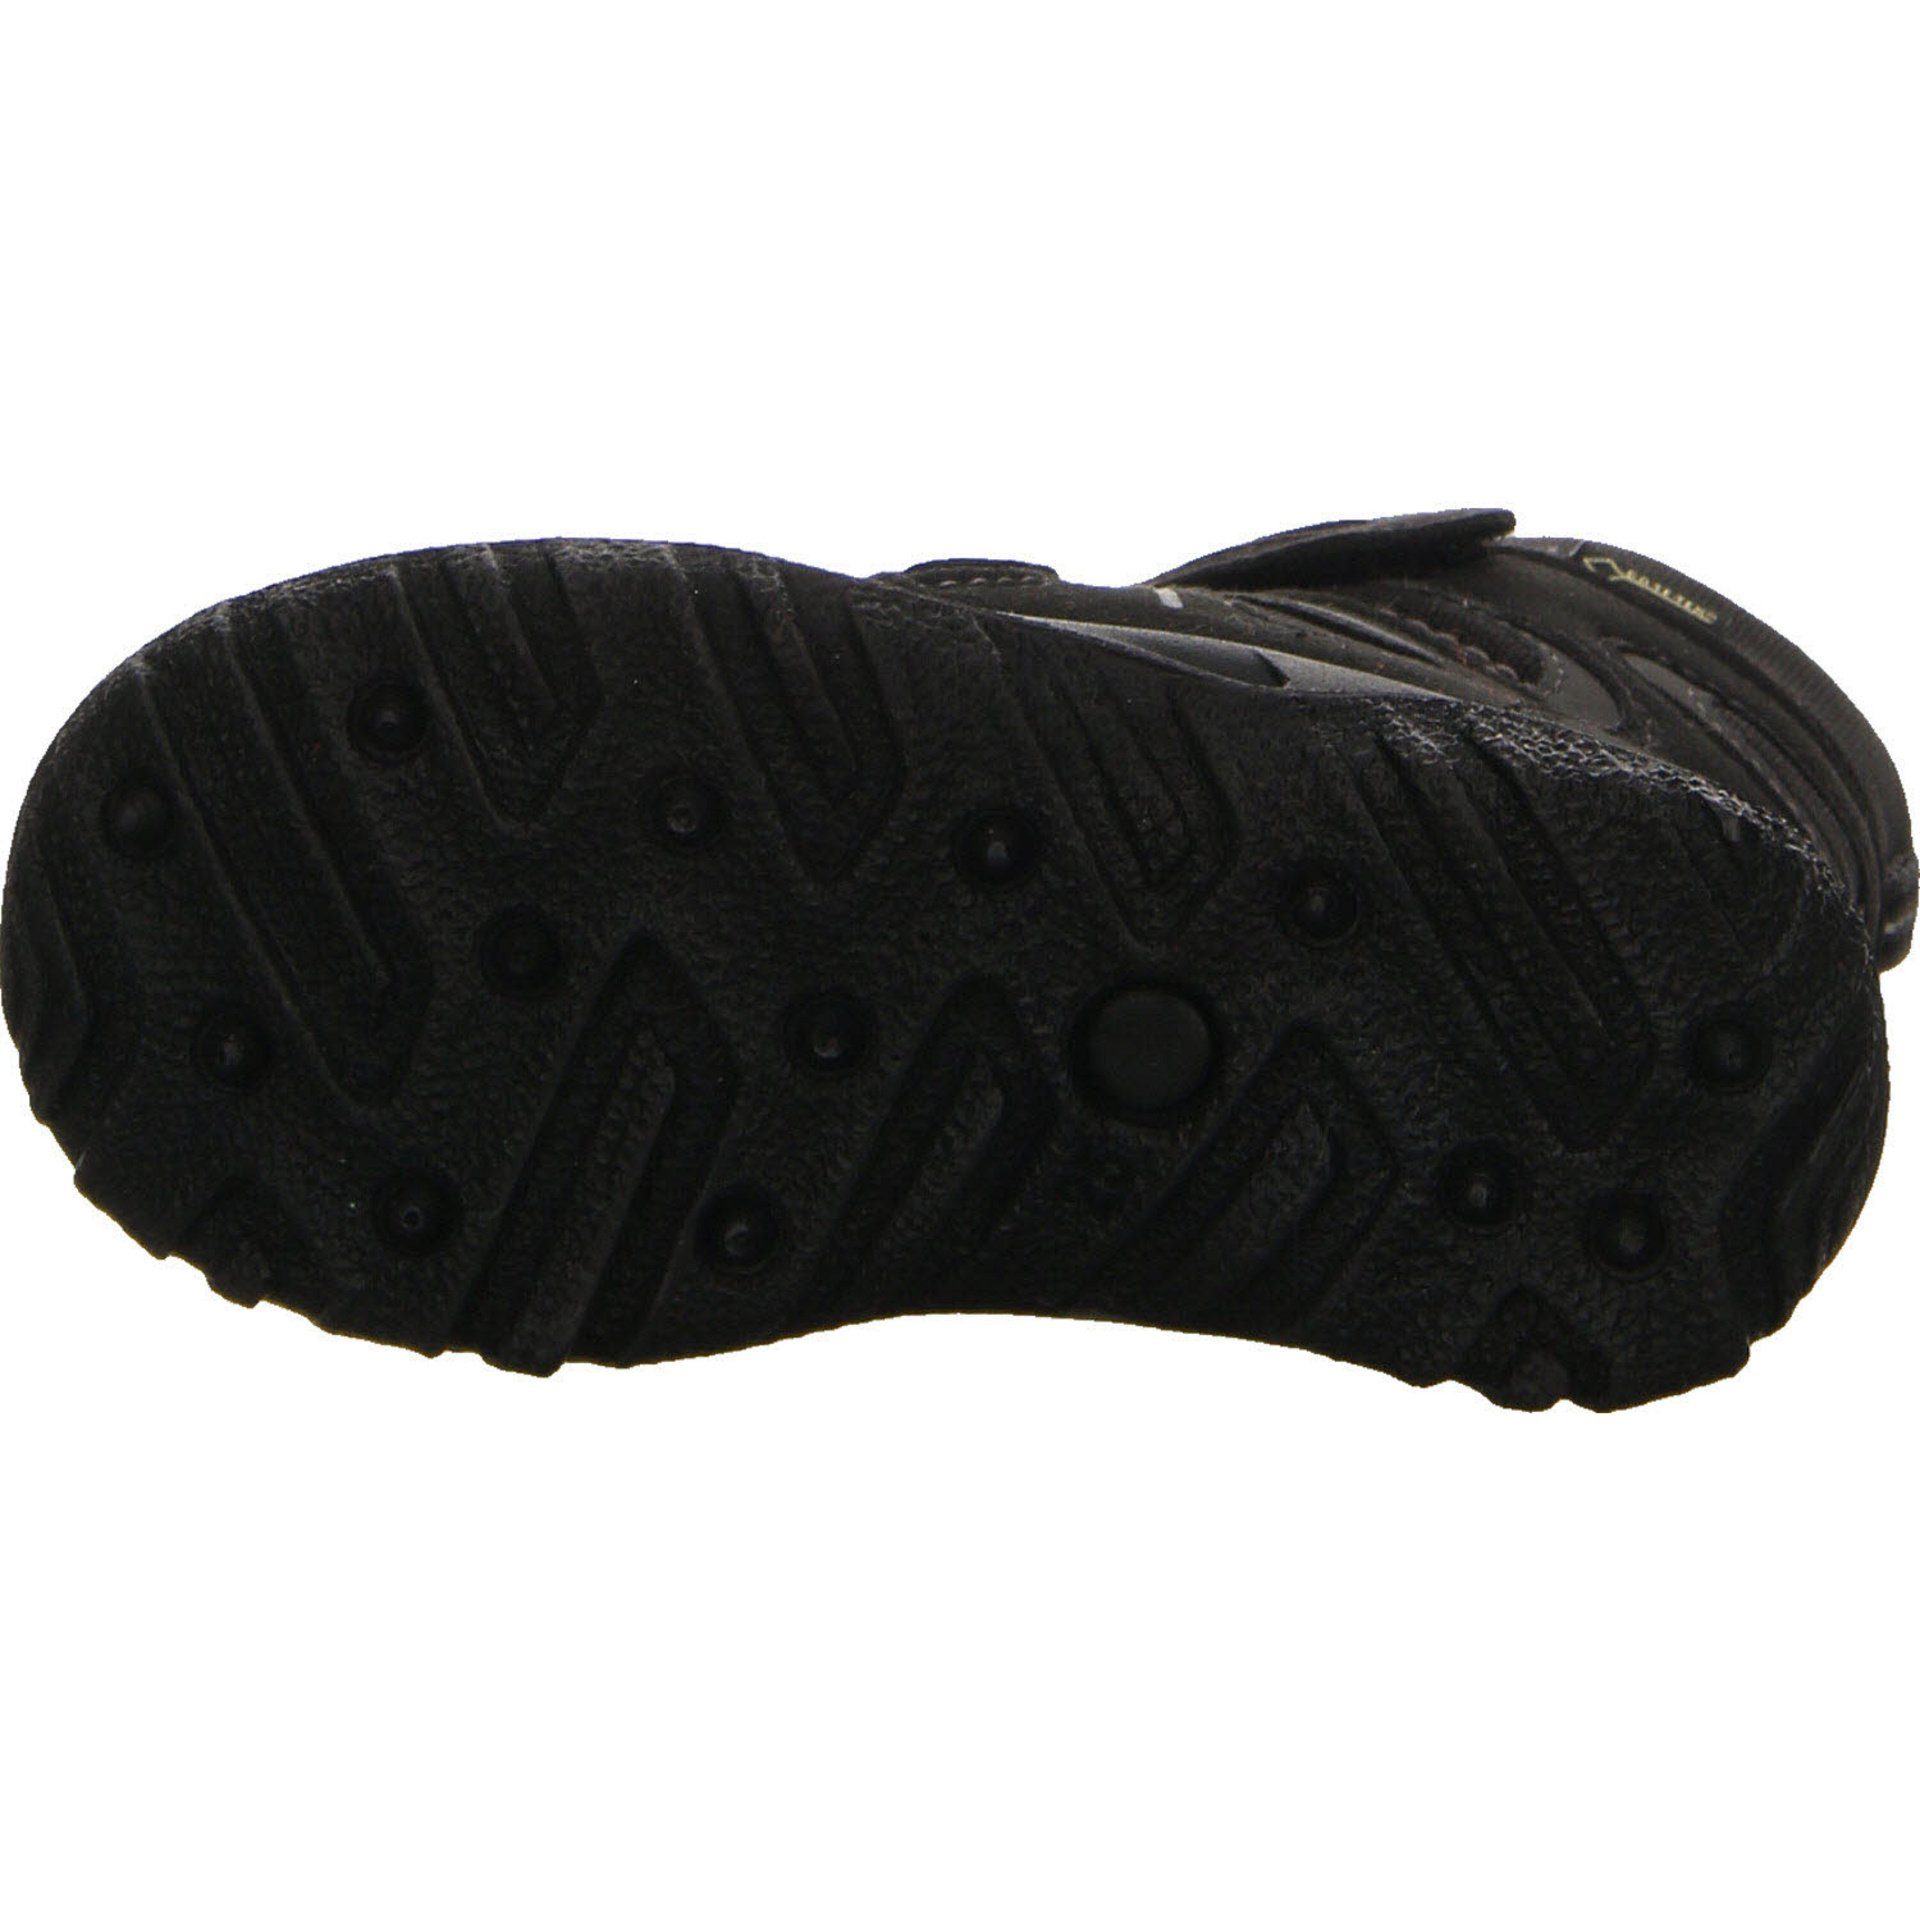 Stiefel Schuhe Husky grau Gore-Tex Synthetikkombination schwarz 2 Stiefel Jungen Boots Superfit